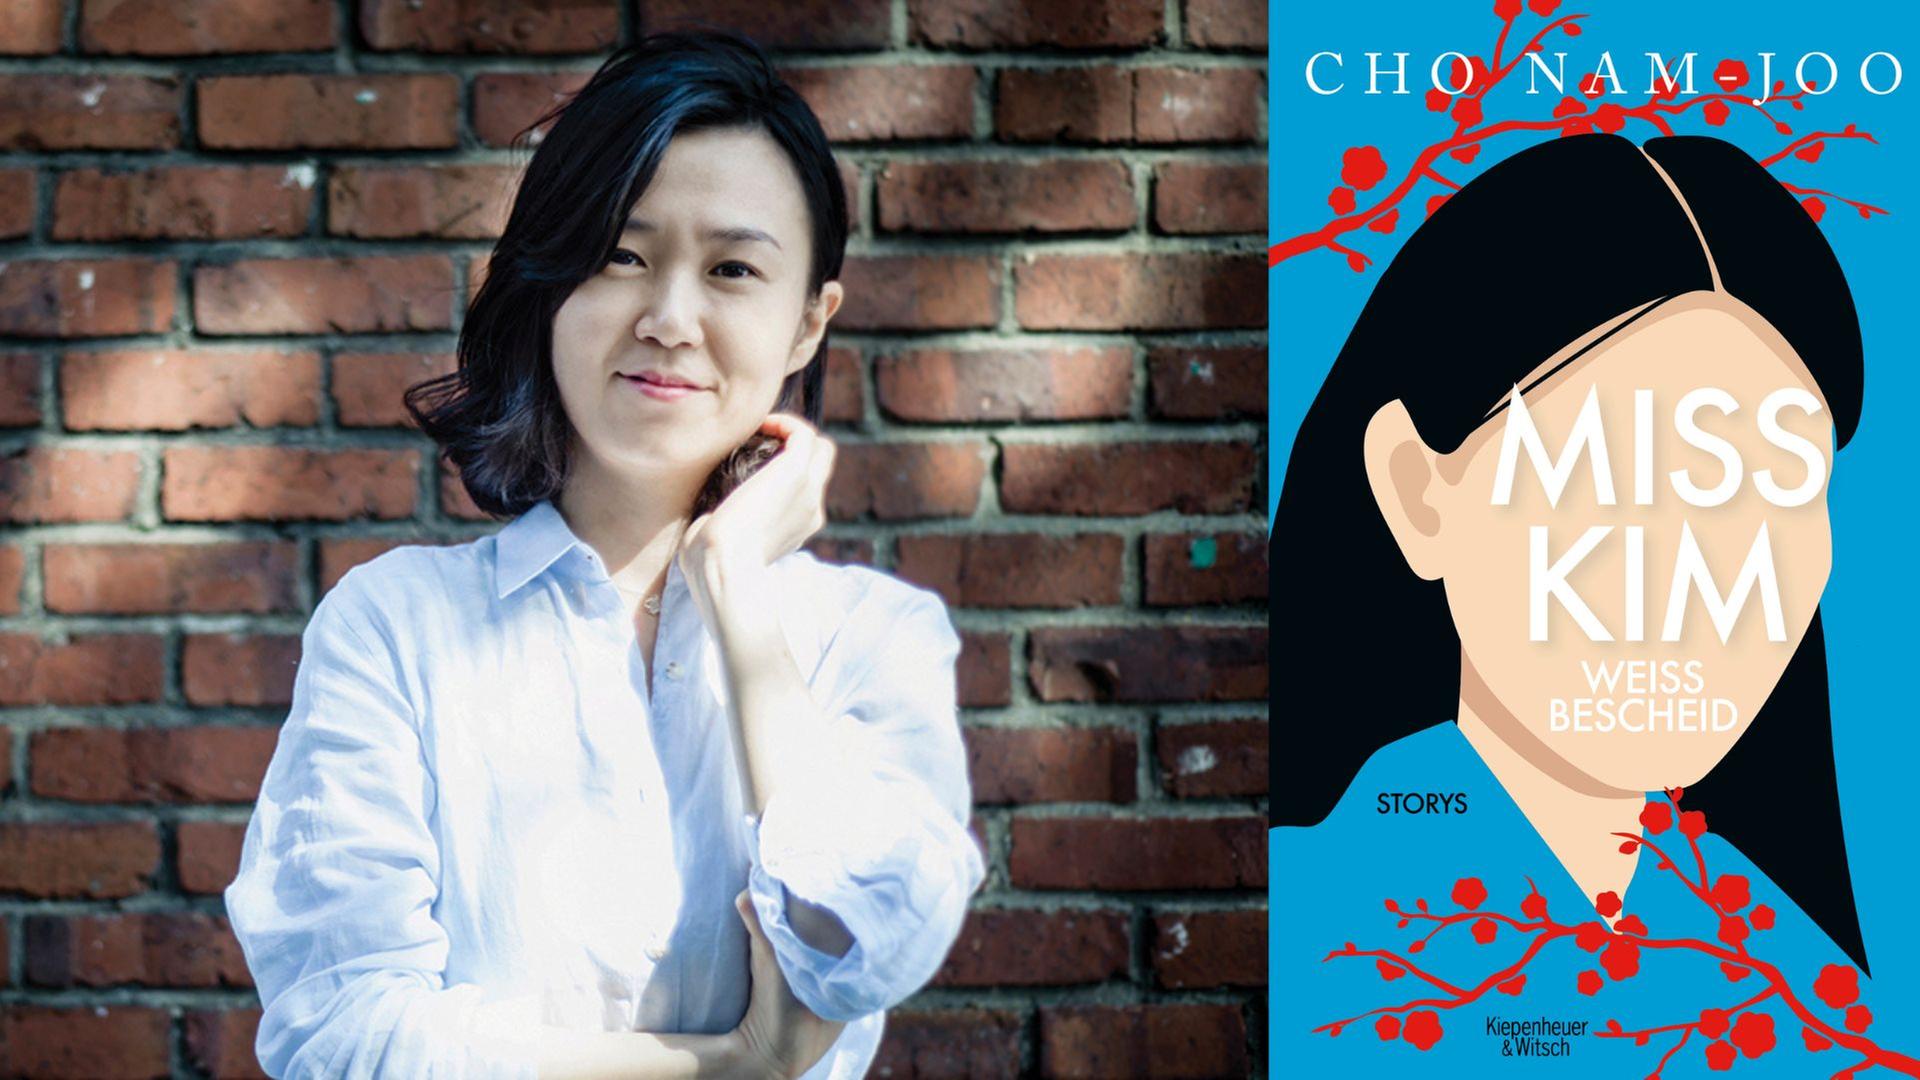 Cho Nam-Joo: "Miss Kim weiß Bescheid"
Zu sehen sind die Autorin und das Buchcover